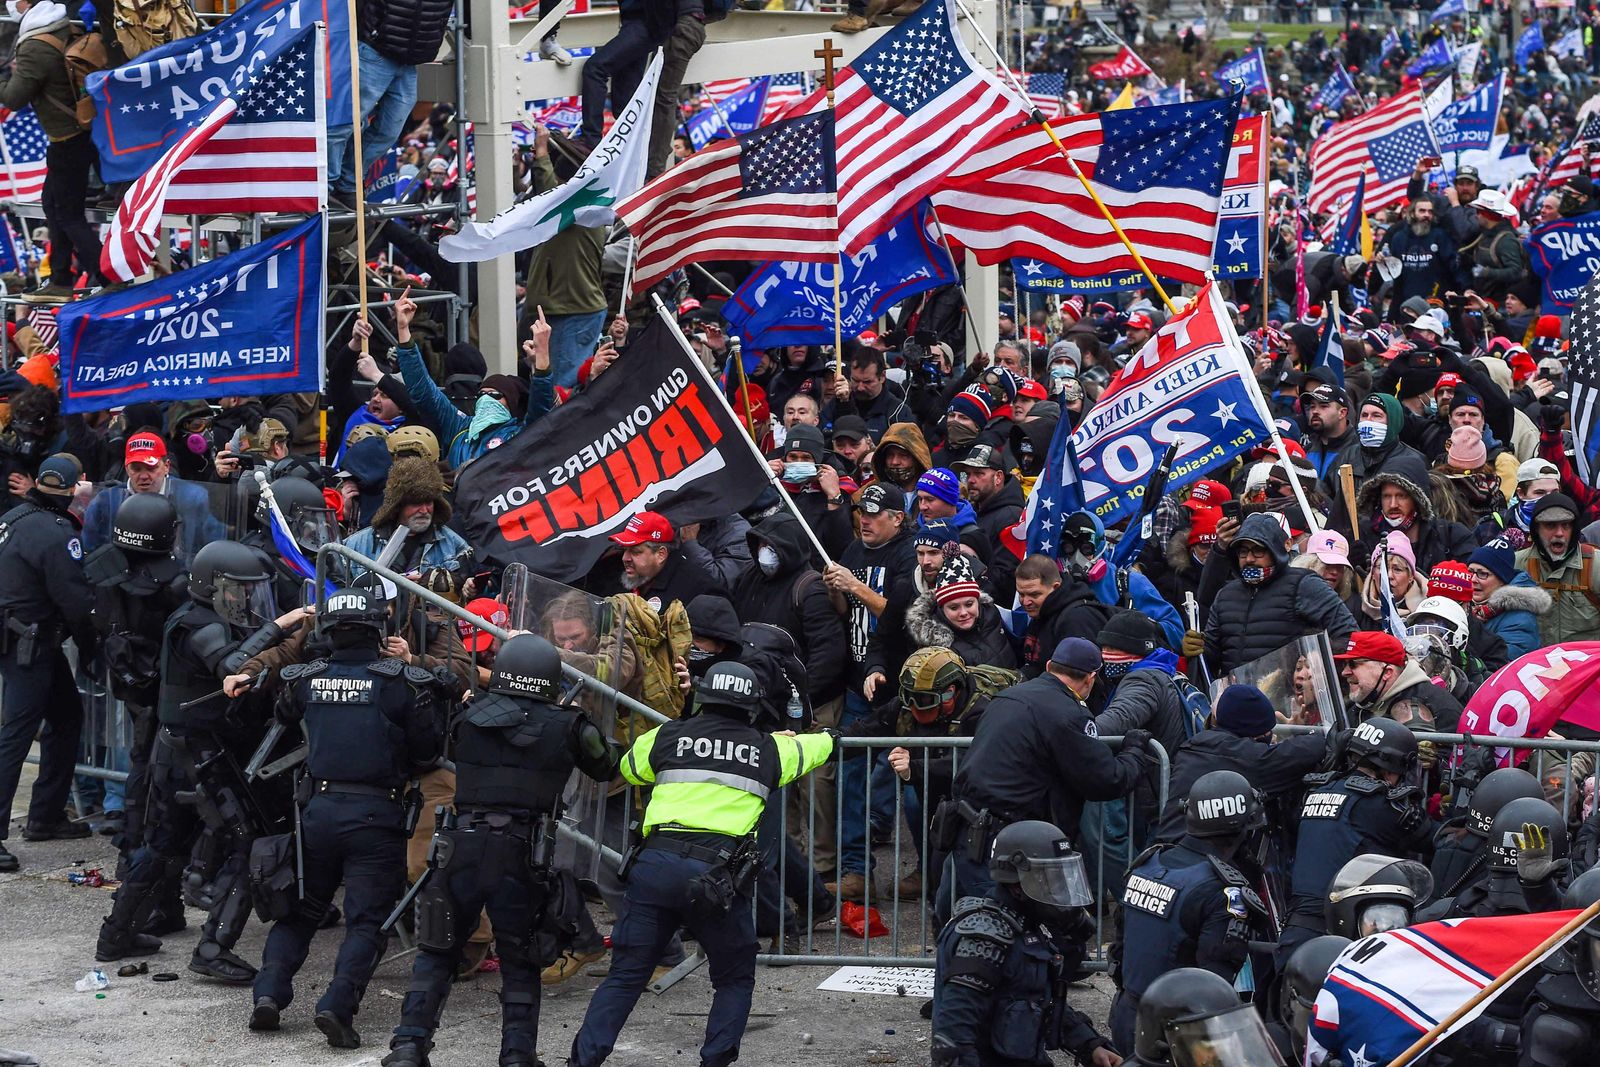 مؤيدو الرئيس الأميركي السابق دونالد ترمب يشتبكون مع قوات الأمن أثناء اقتحامهم مبنى الكابيتول في واشنطن - 6 يناير 2021 - AFP